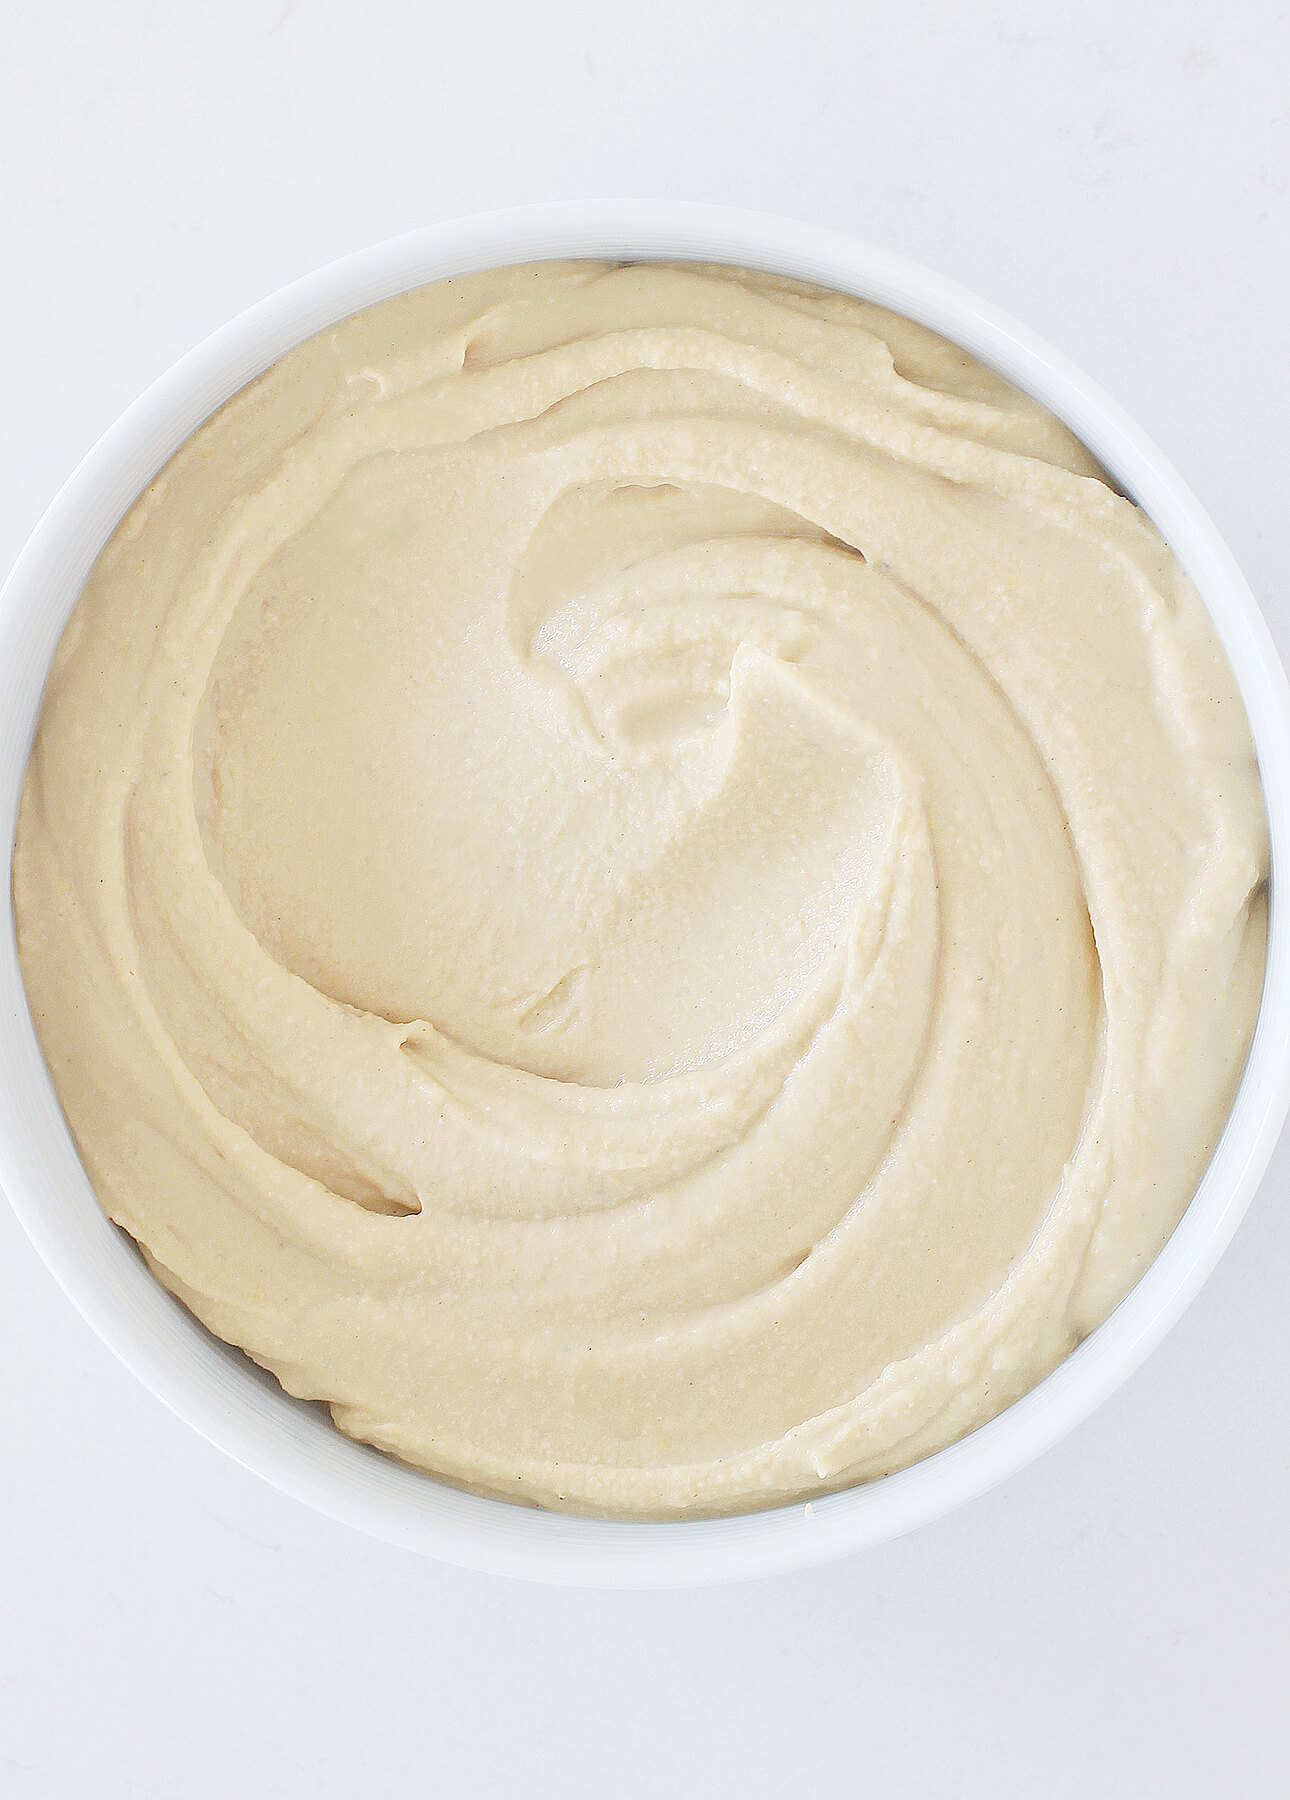 The Creamiest Homemade Hummus // FoodNouveau.com